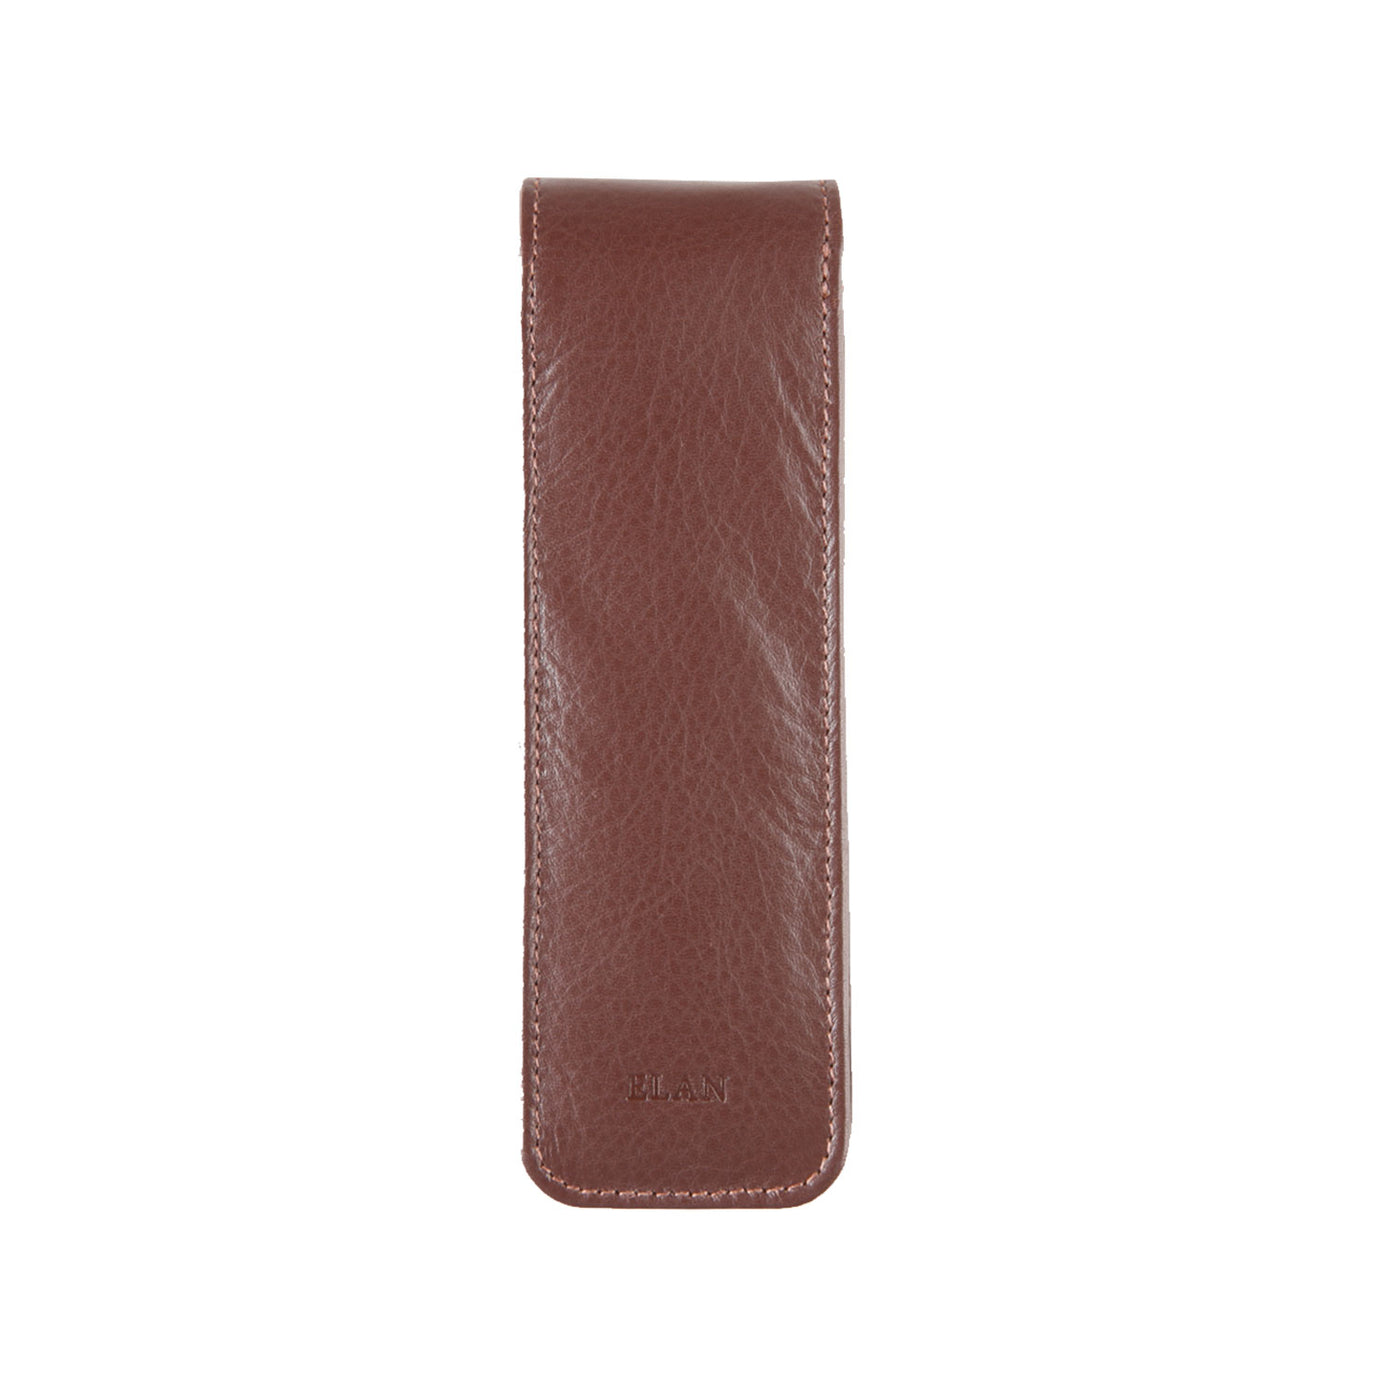 Elan Leather 2 Pen Holder - Brown 3